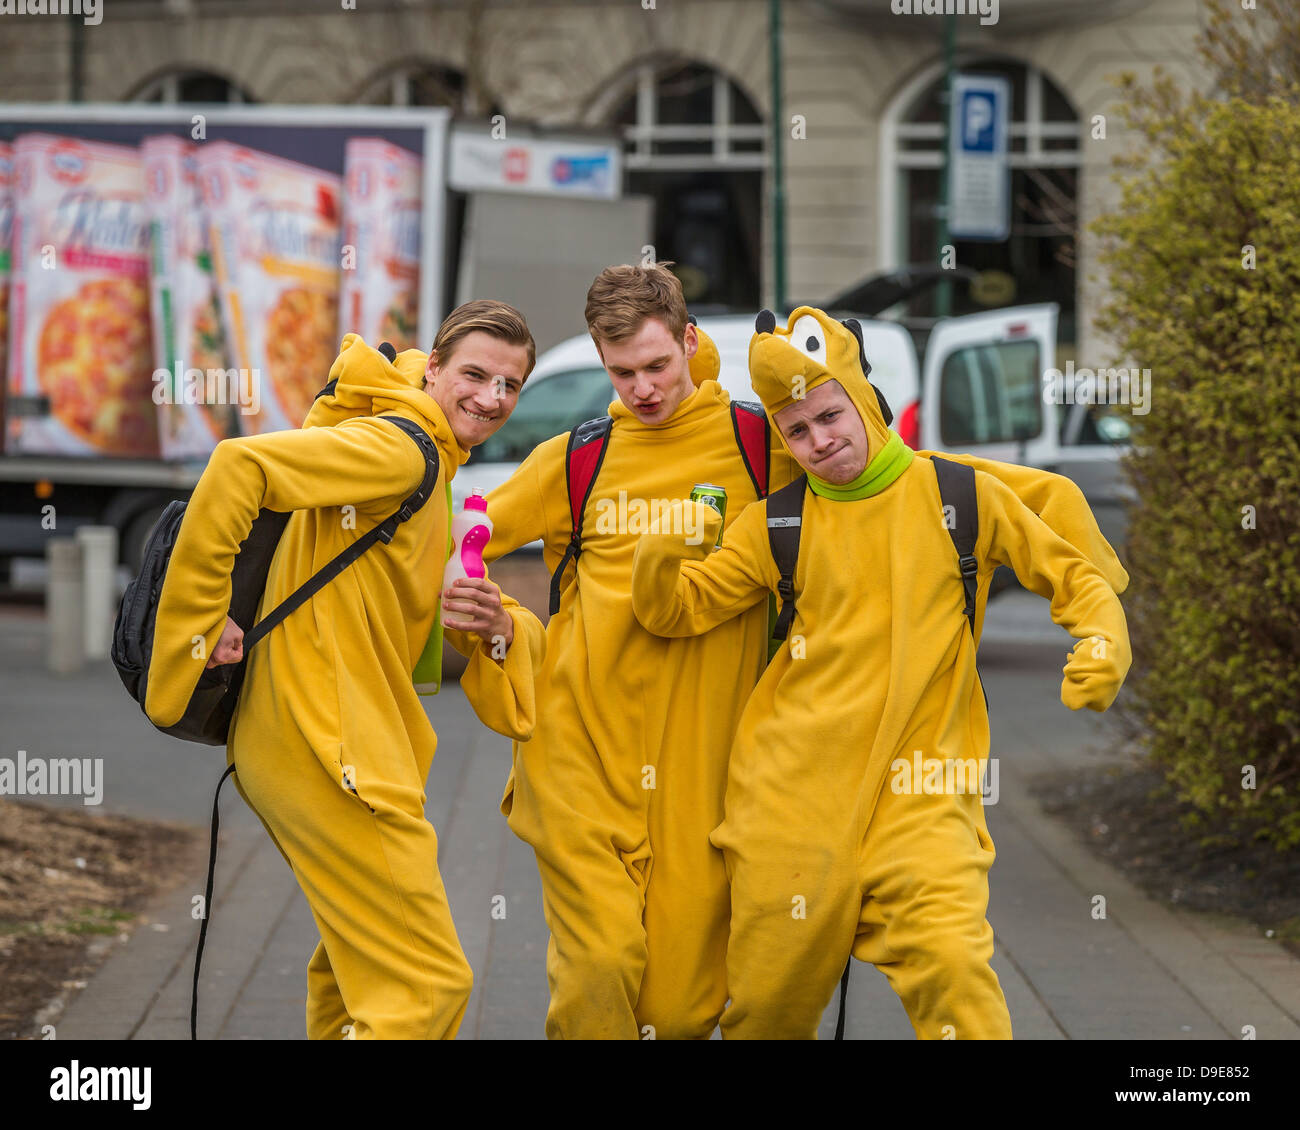 Gli studenti dress up per celebrare la laurea dalla scuola secondaria, custom noto come Dimitering o Dimmison, Reykjavik, Islanda Foto Stock